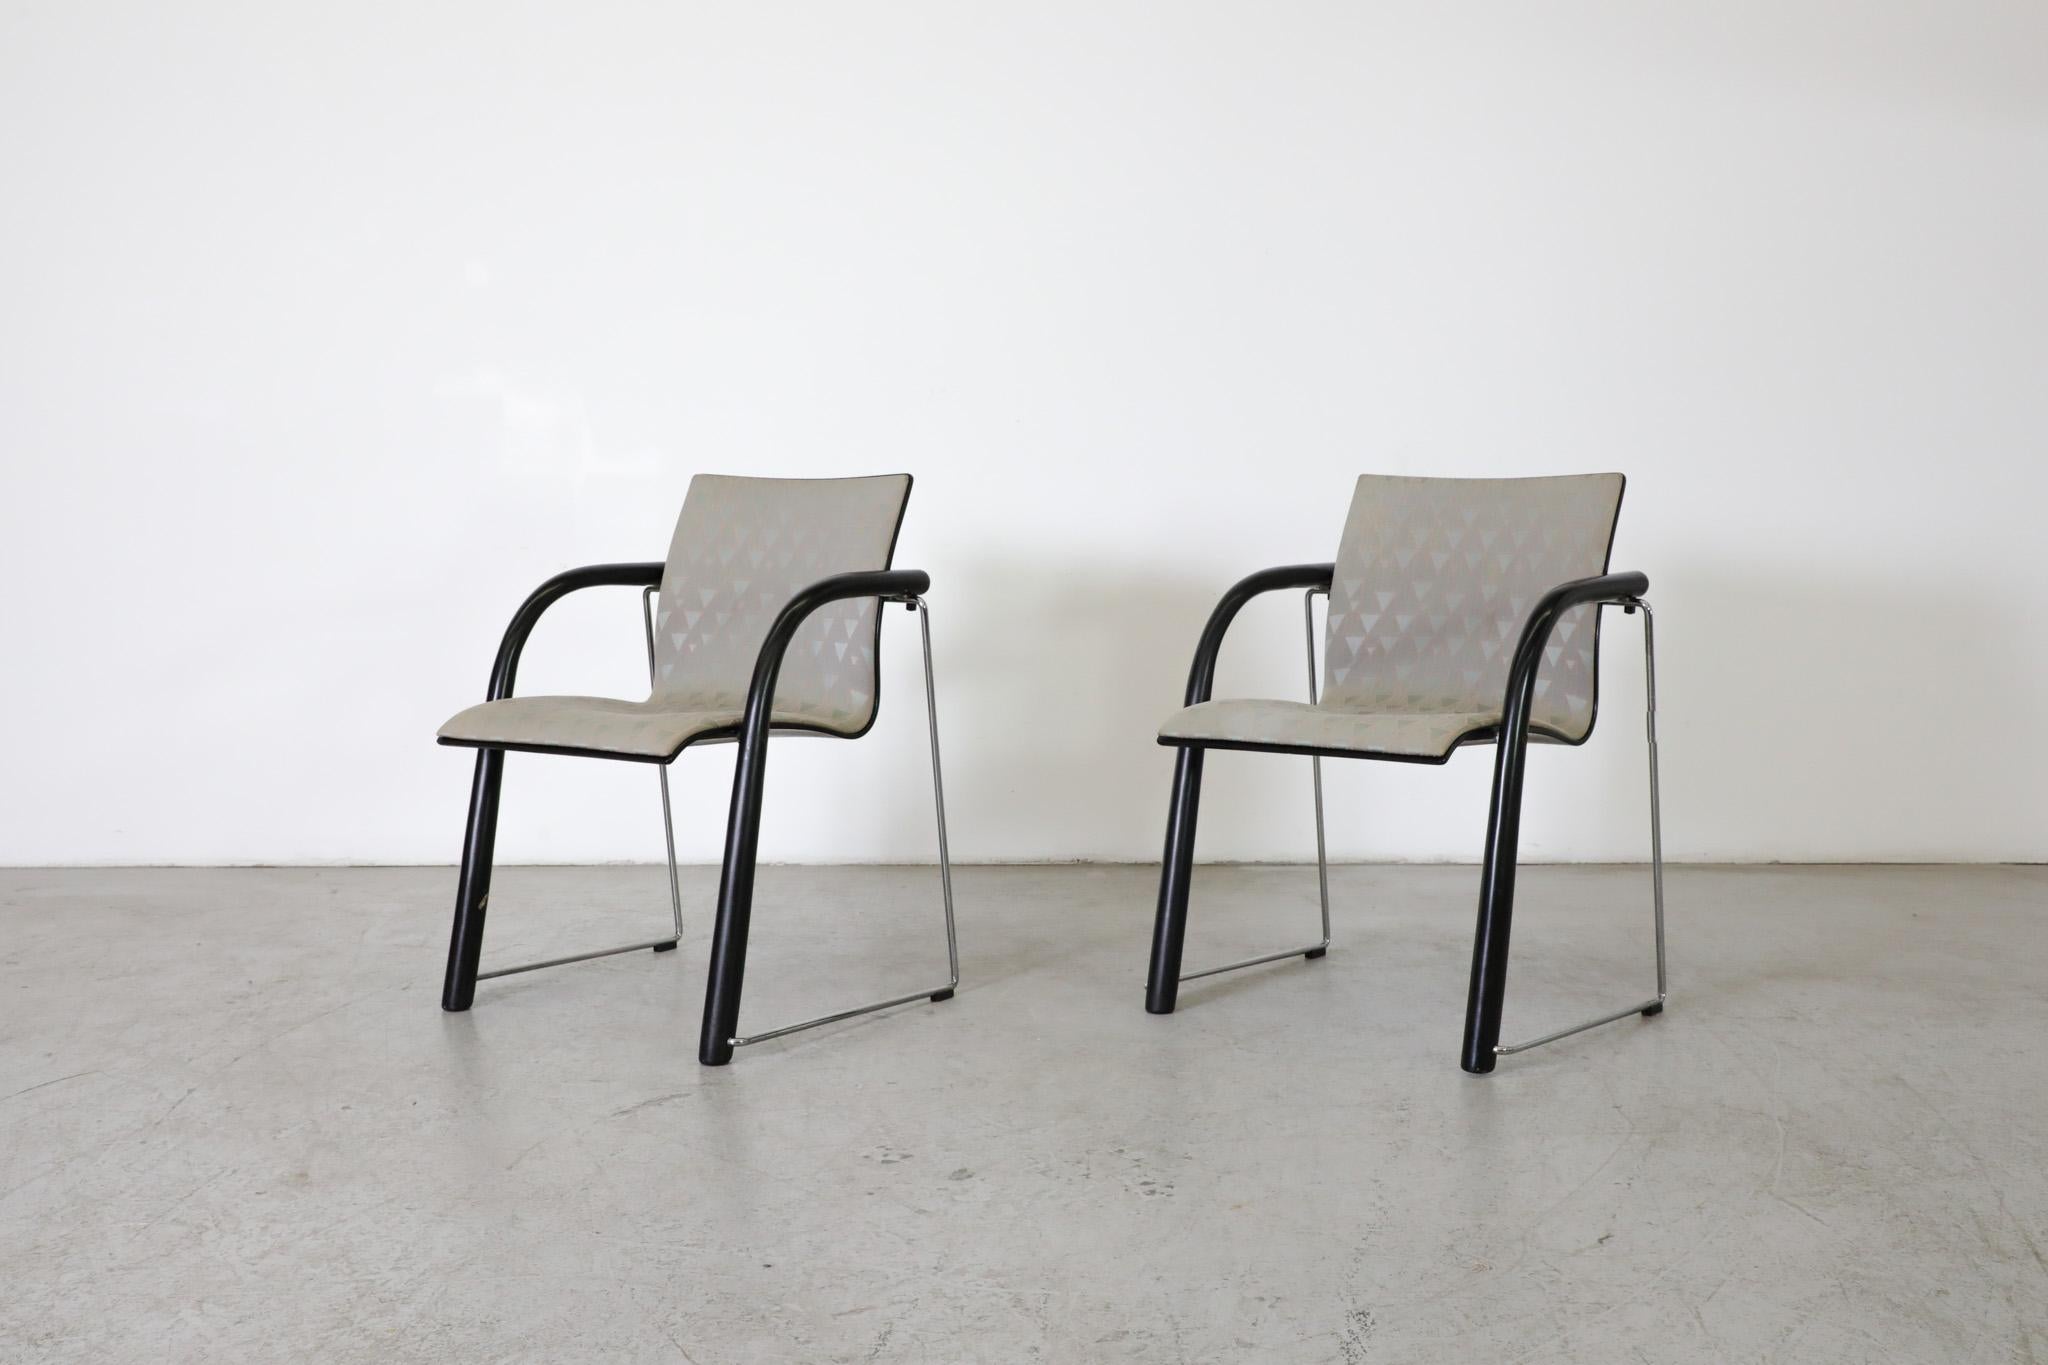 Die Designer Ulrich Böhme und Wulf Schneider entwarfen den S320 im Jahr 1984 für den legendären Hersteller Thonet. Der Stuhl hat ein zeitloses Design, ist stapelbar, sehr robust und dank der geformten, ergonomischen Sitzschale äußerst bequem.